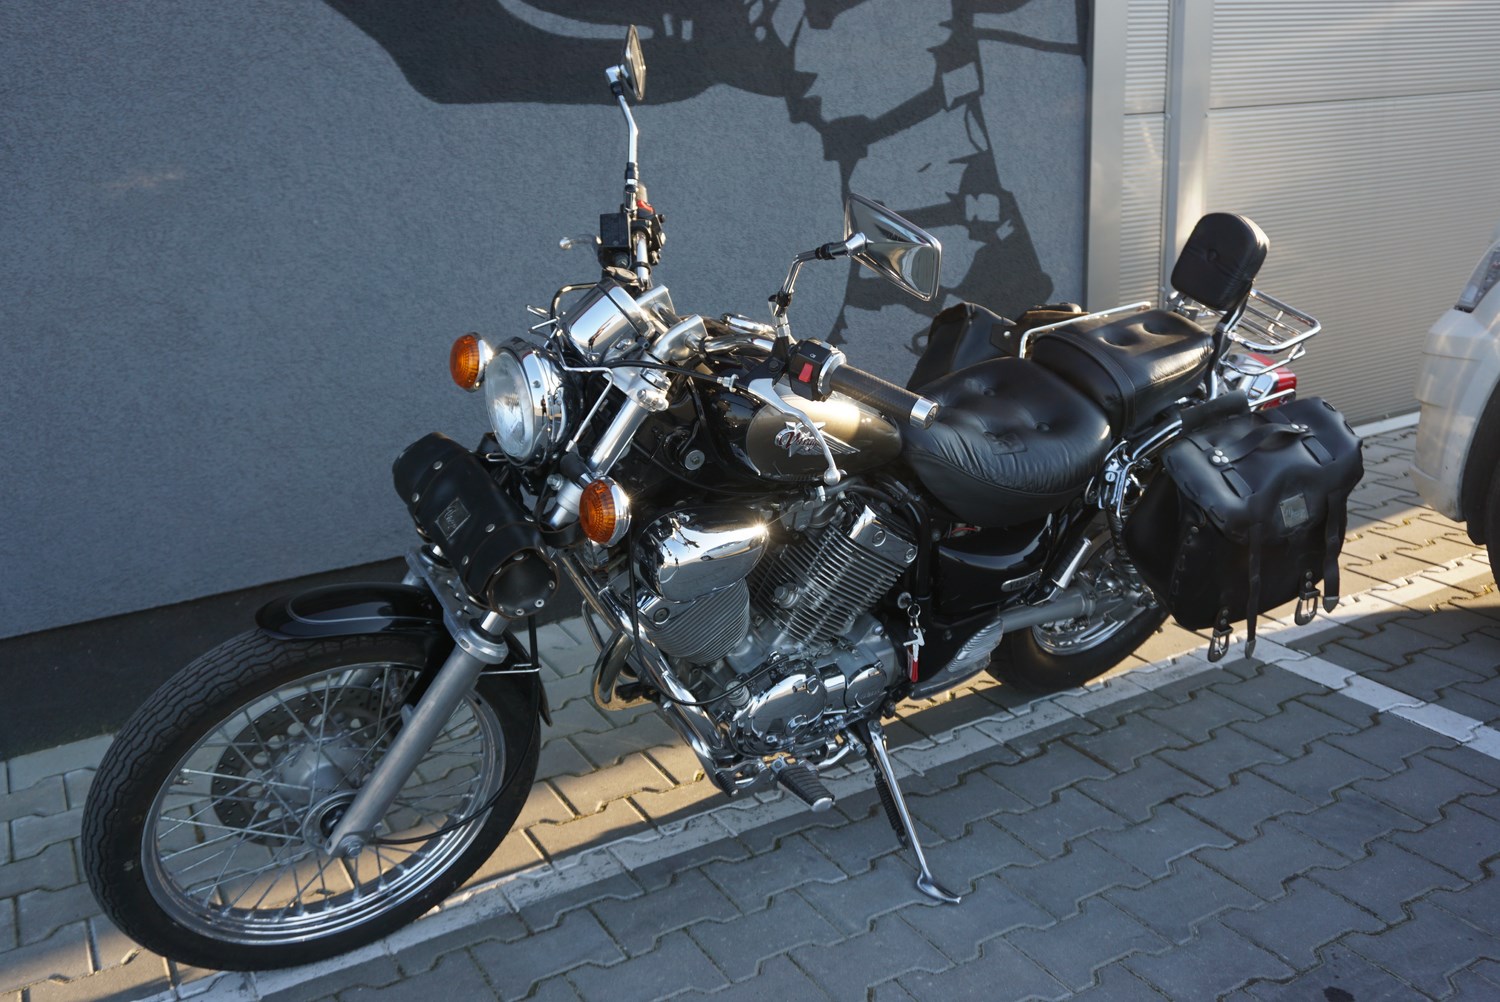 Yamaha Virago 535